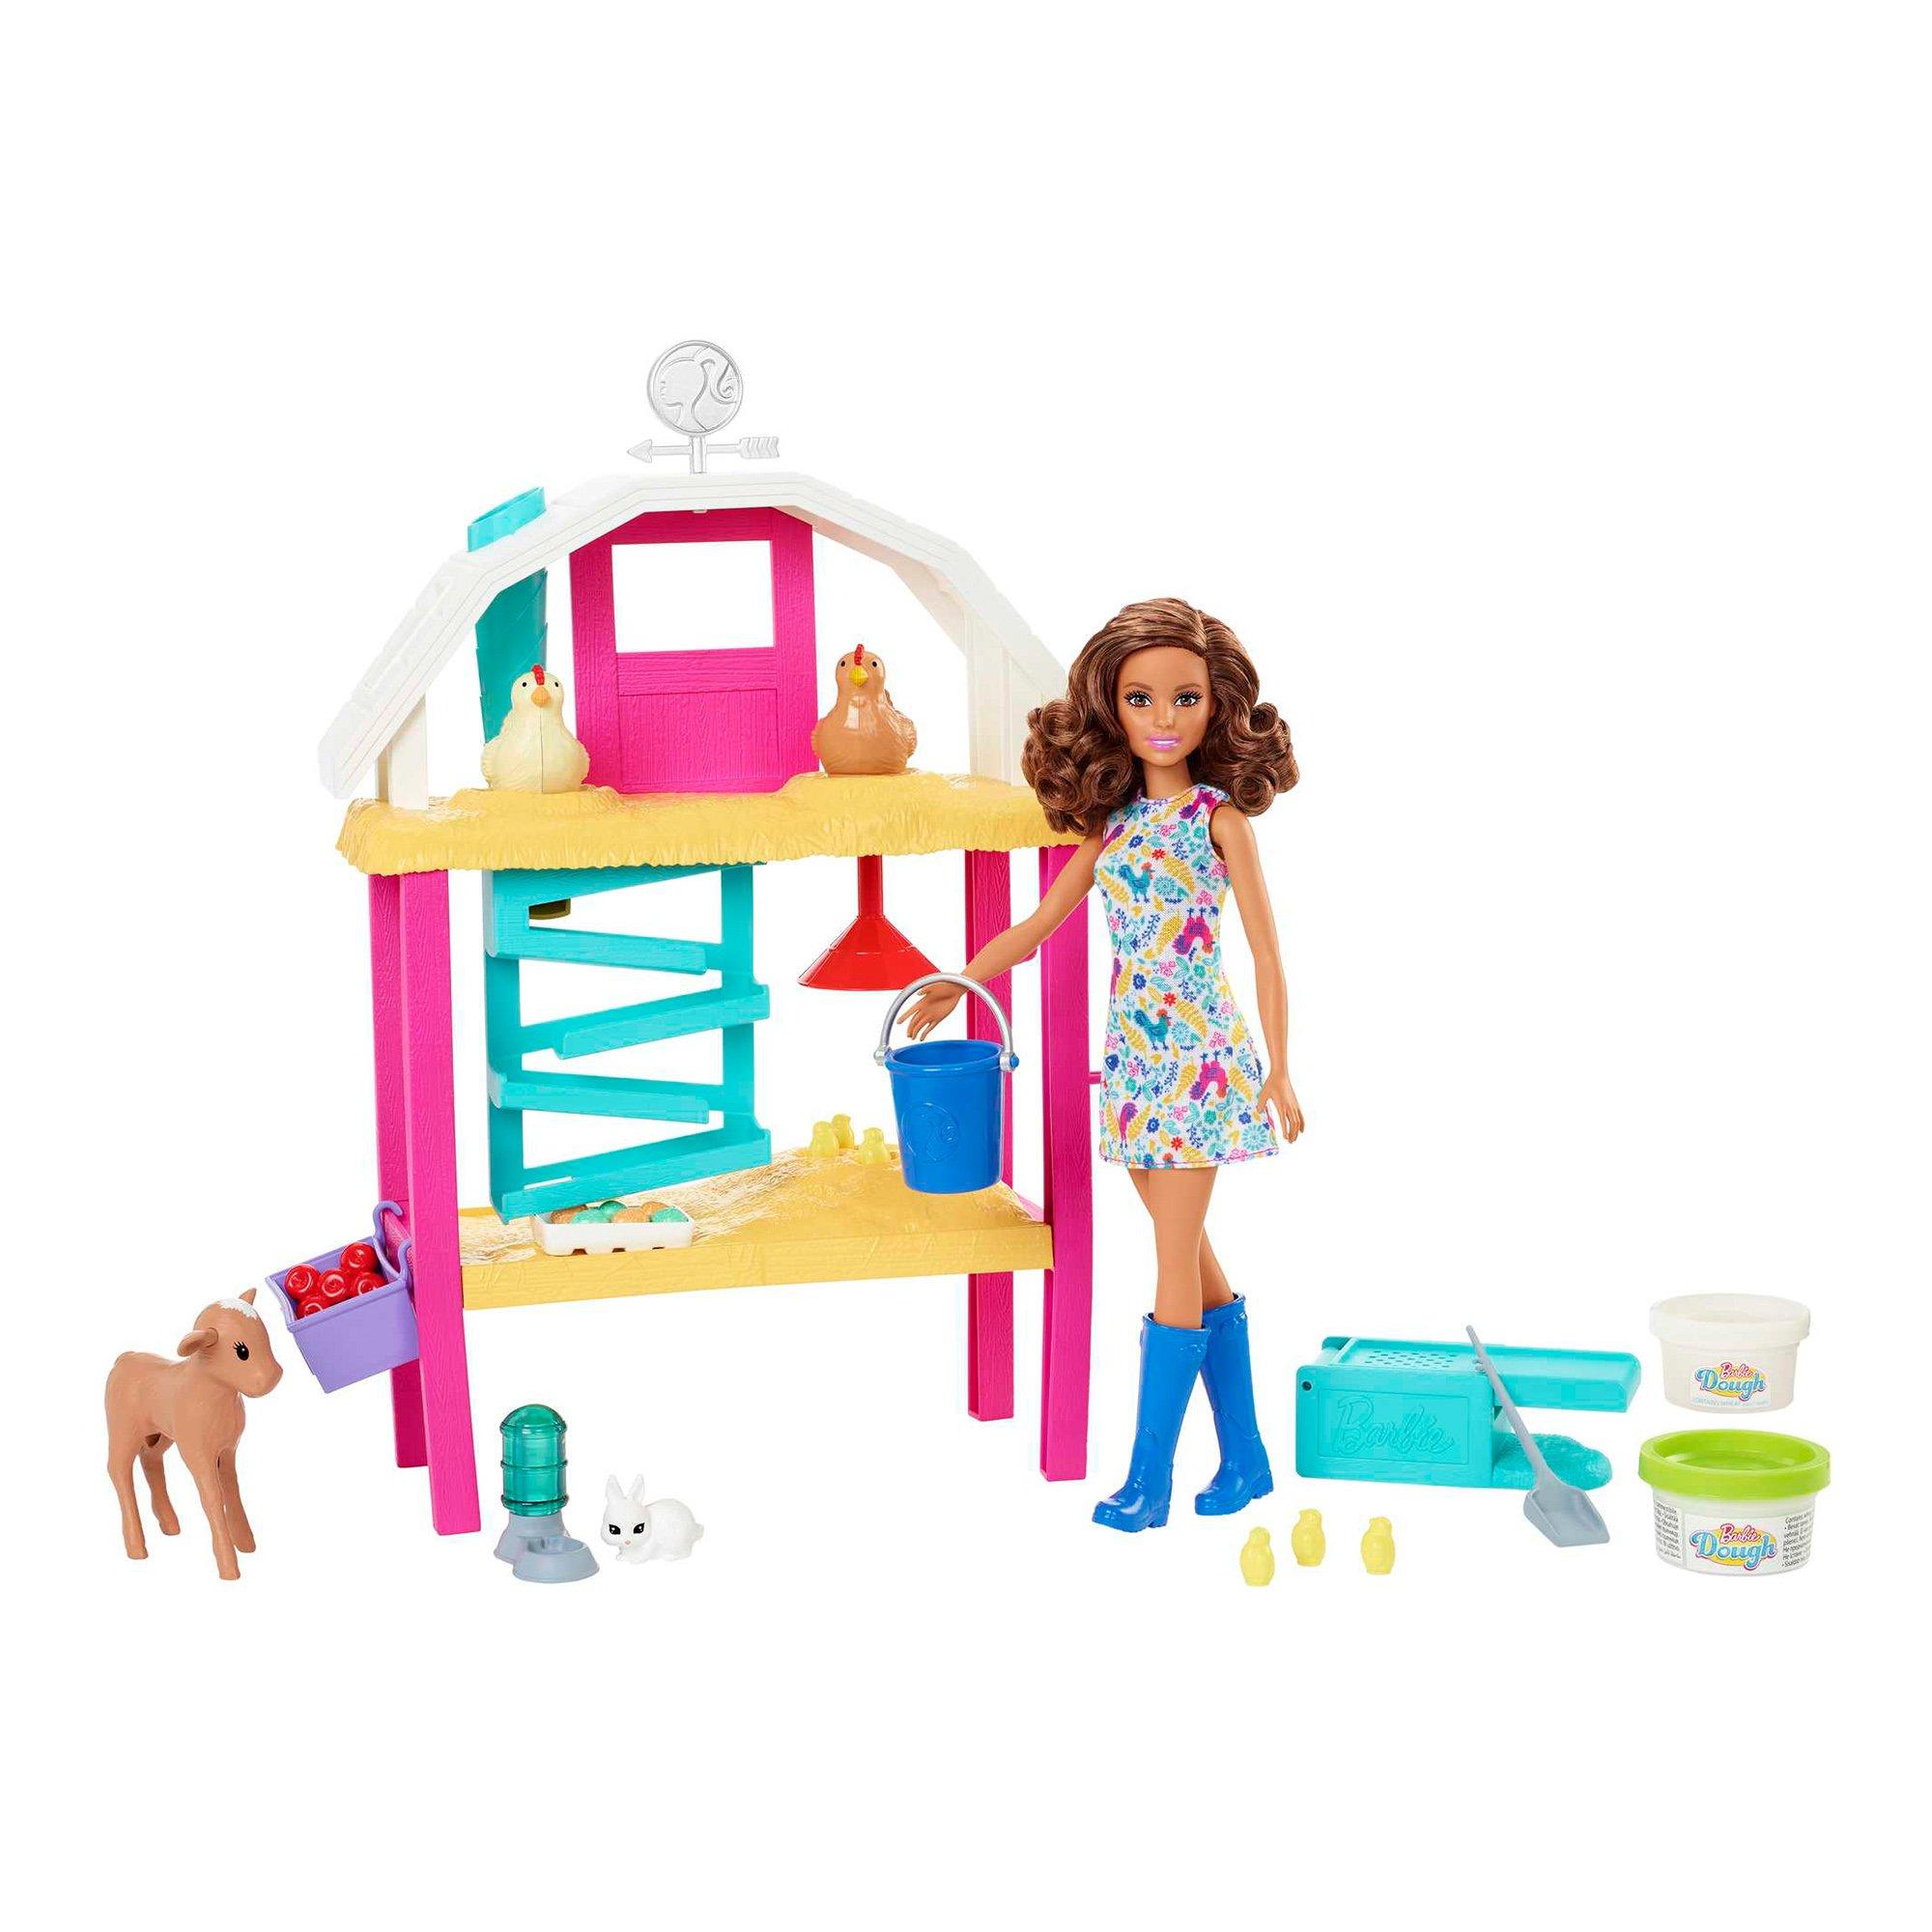 Barbie Casa di Malibu FXG57 - Playset Richiudibile su Due Piani con  Accessori